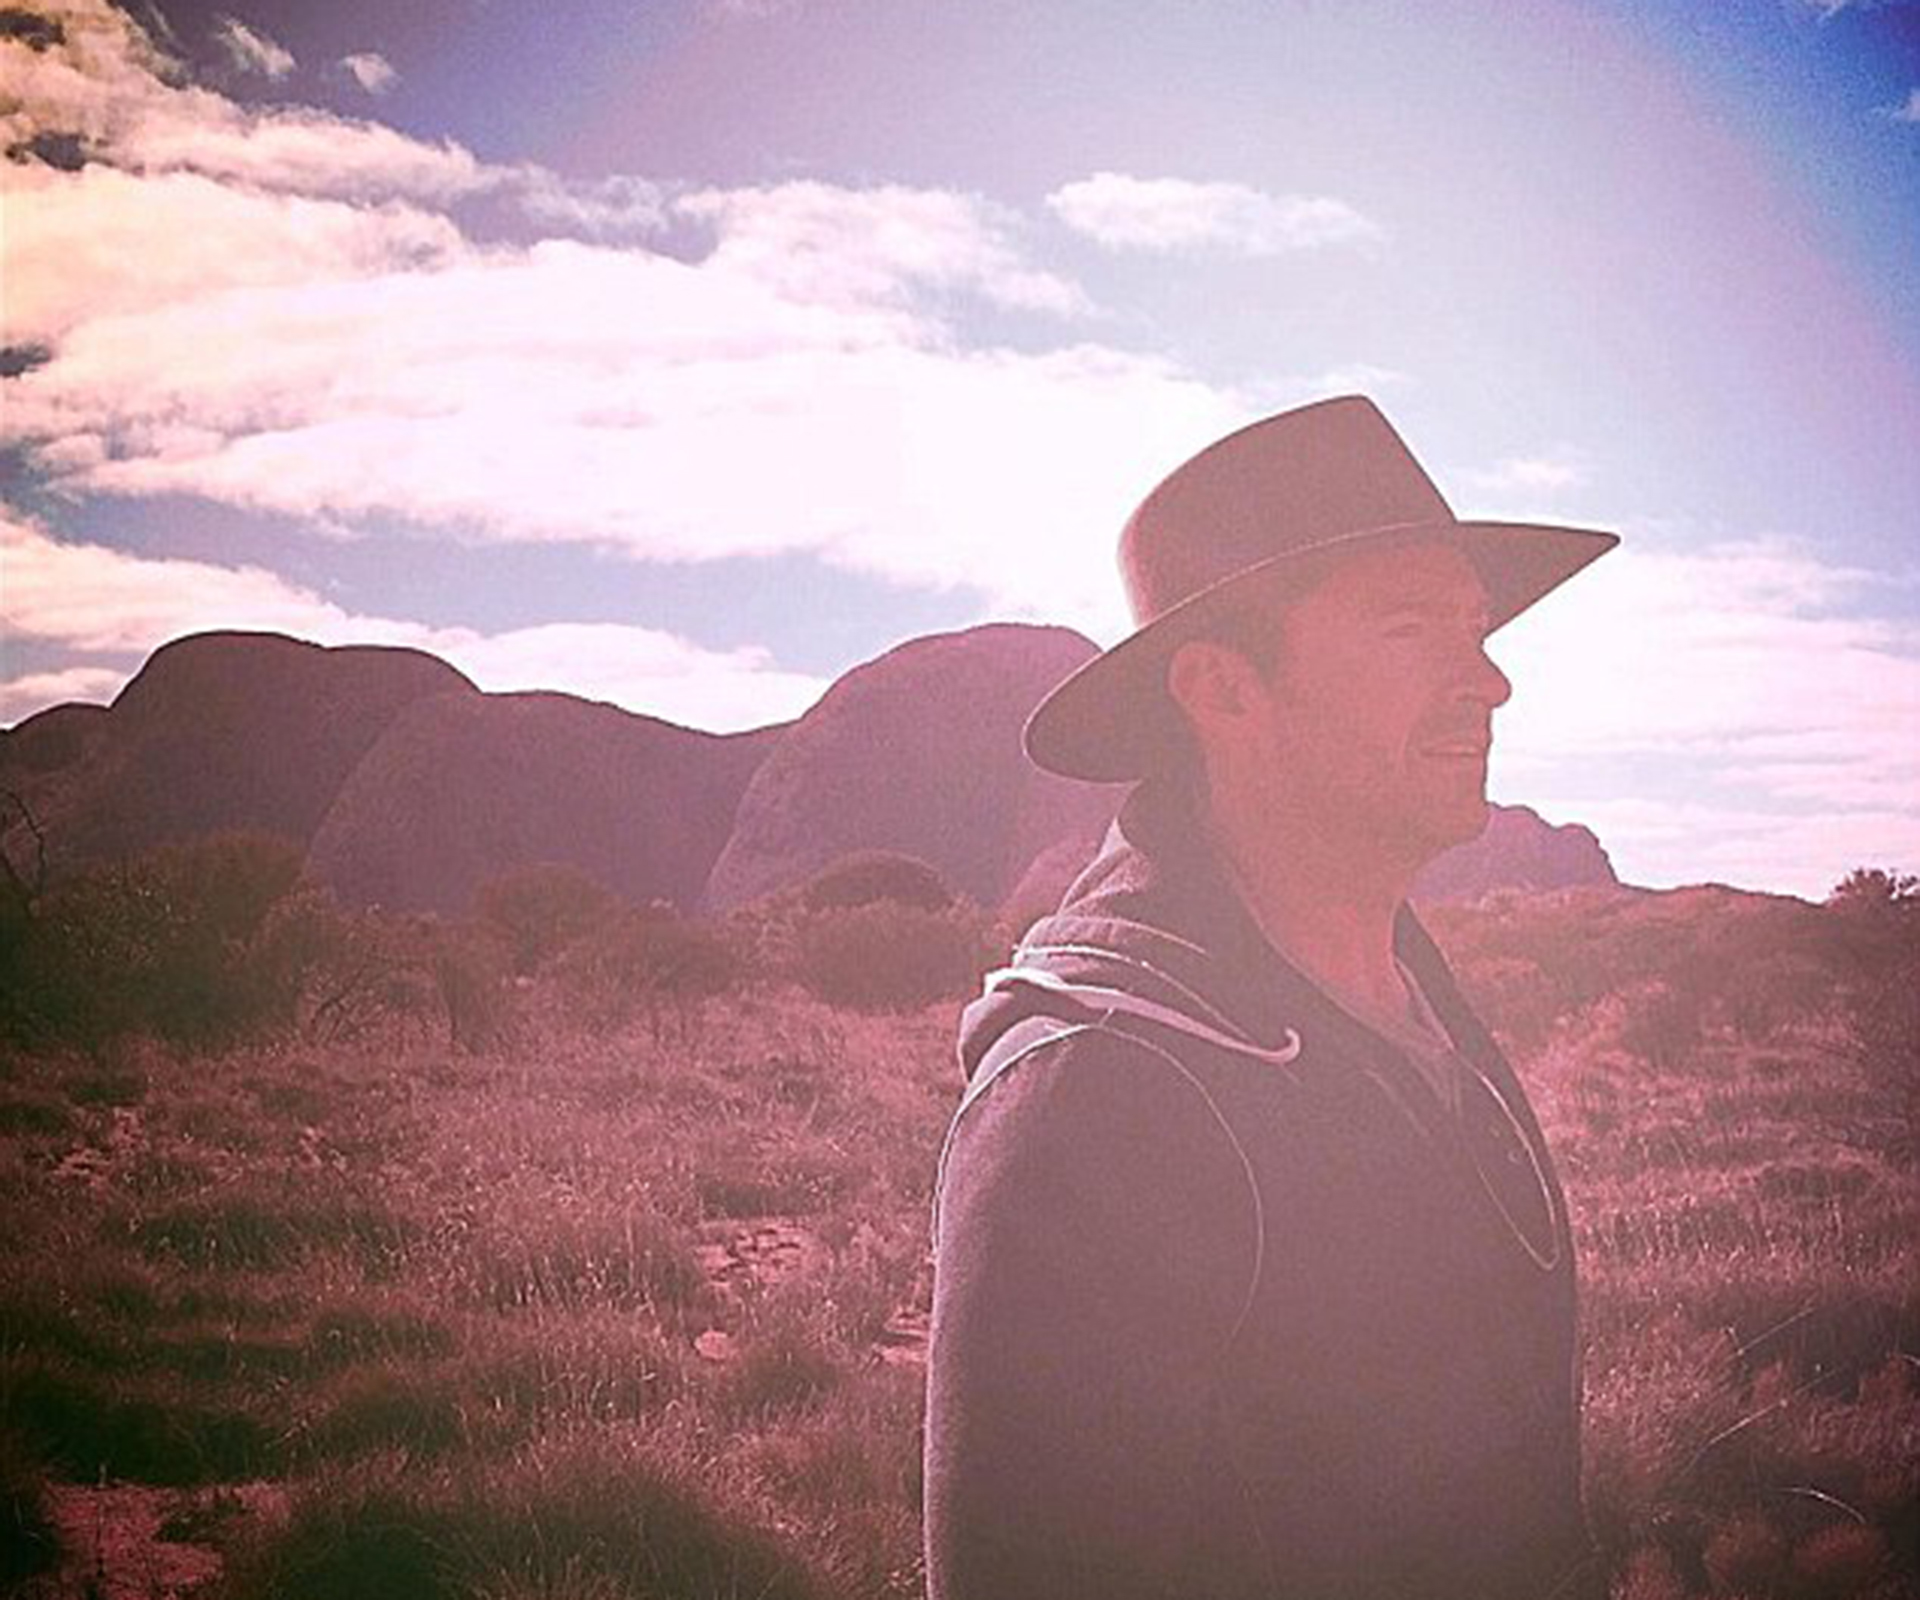 Hugh Jackman’s outback adventure